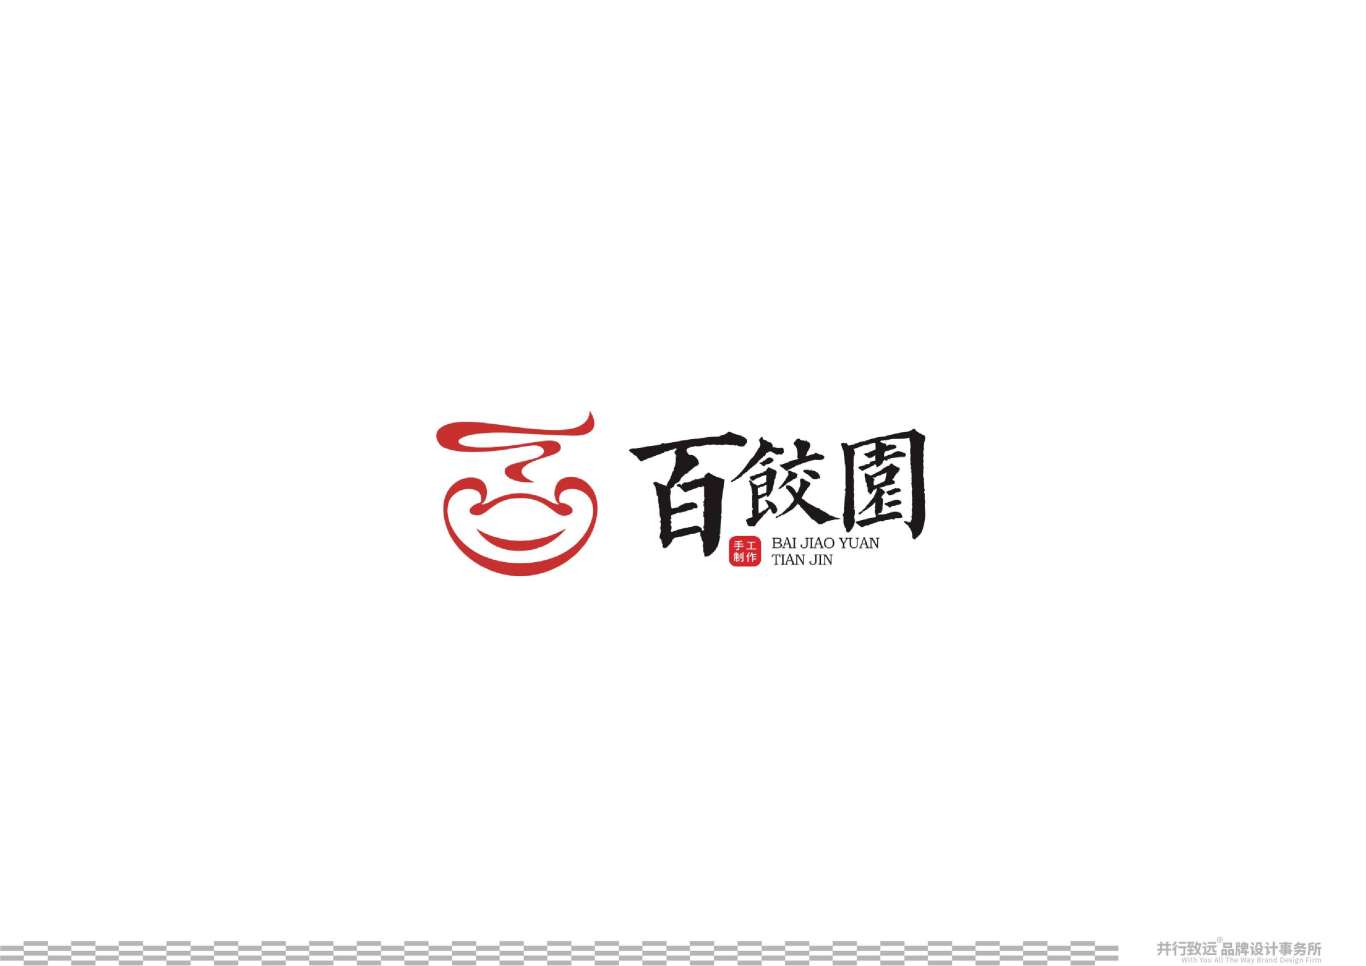 天津百餃園logo升級設計圖26